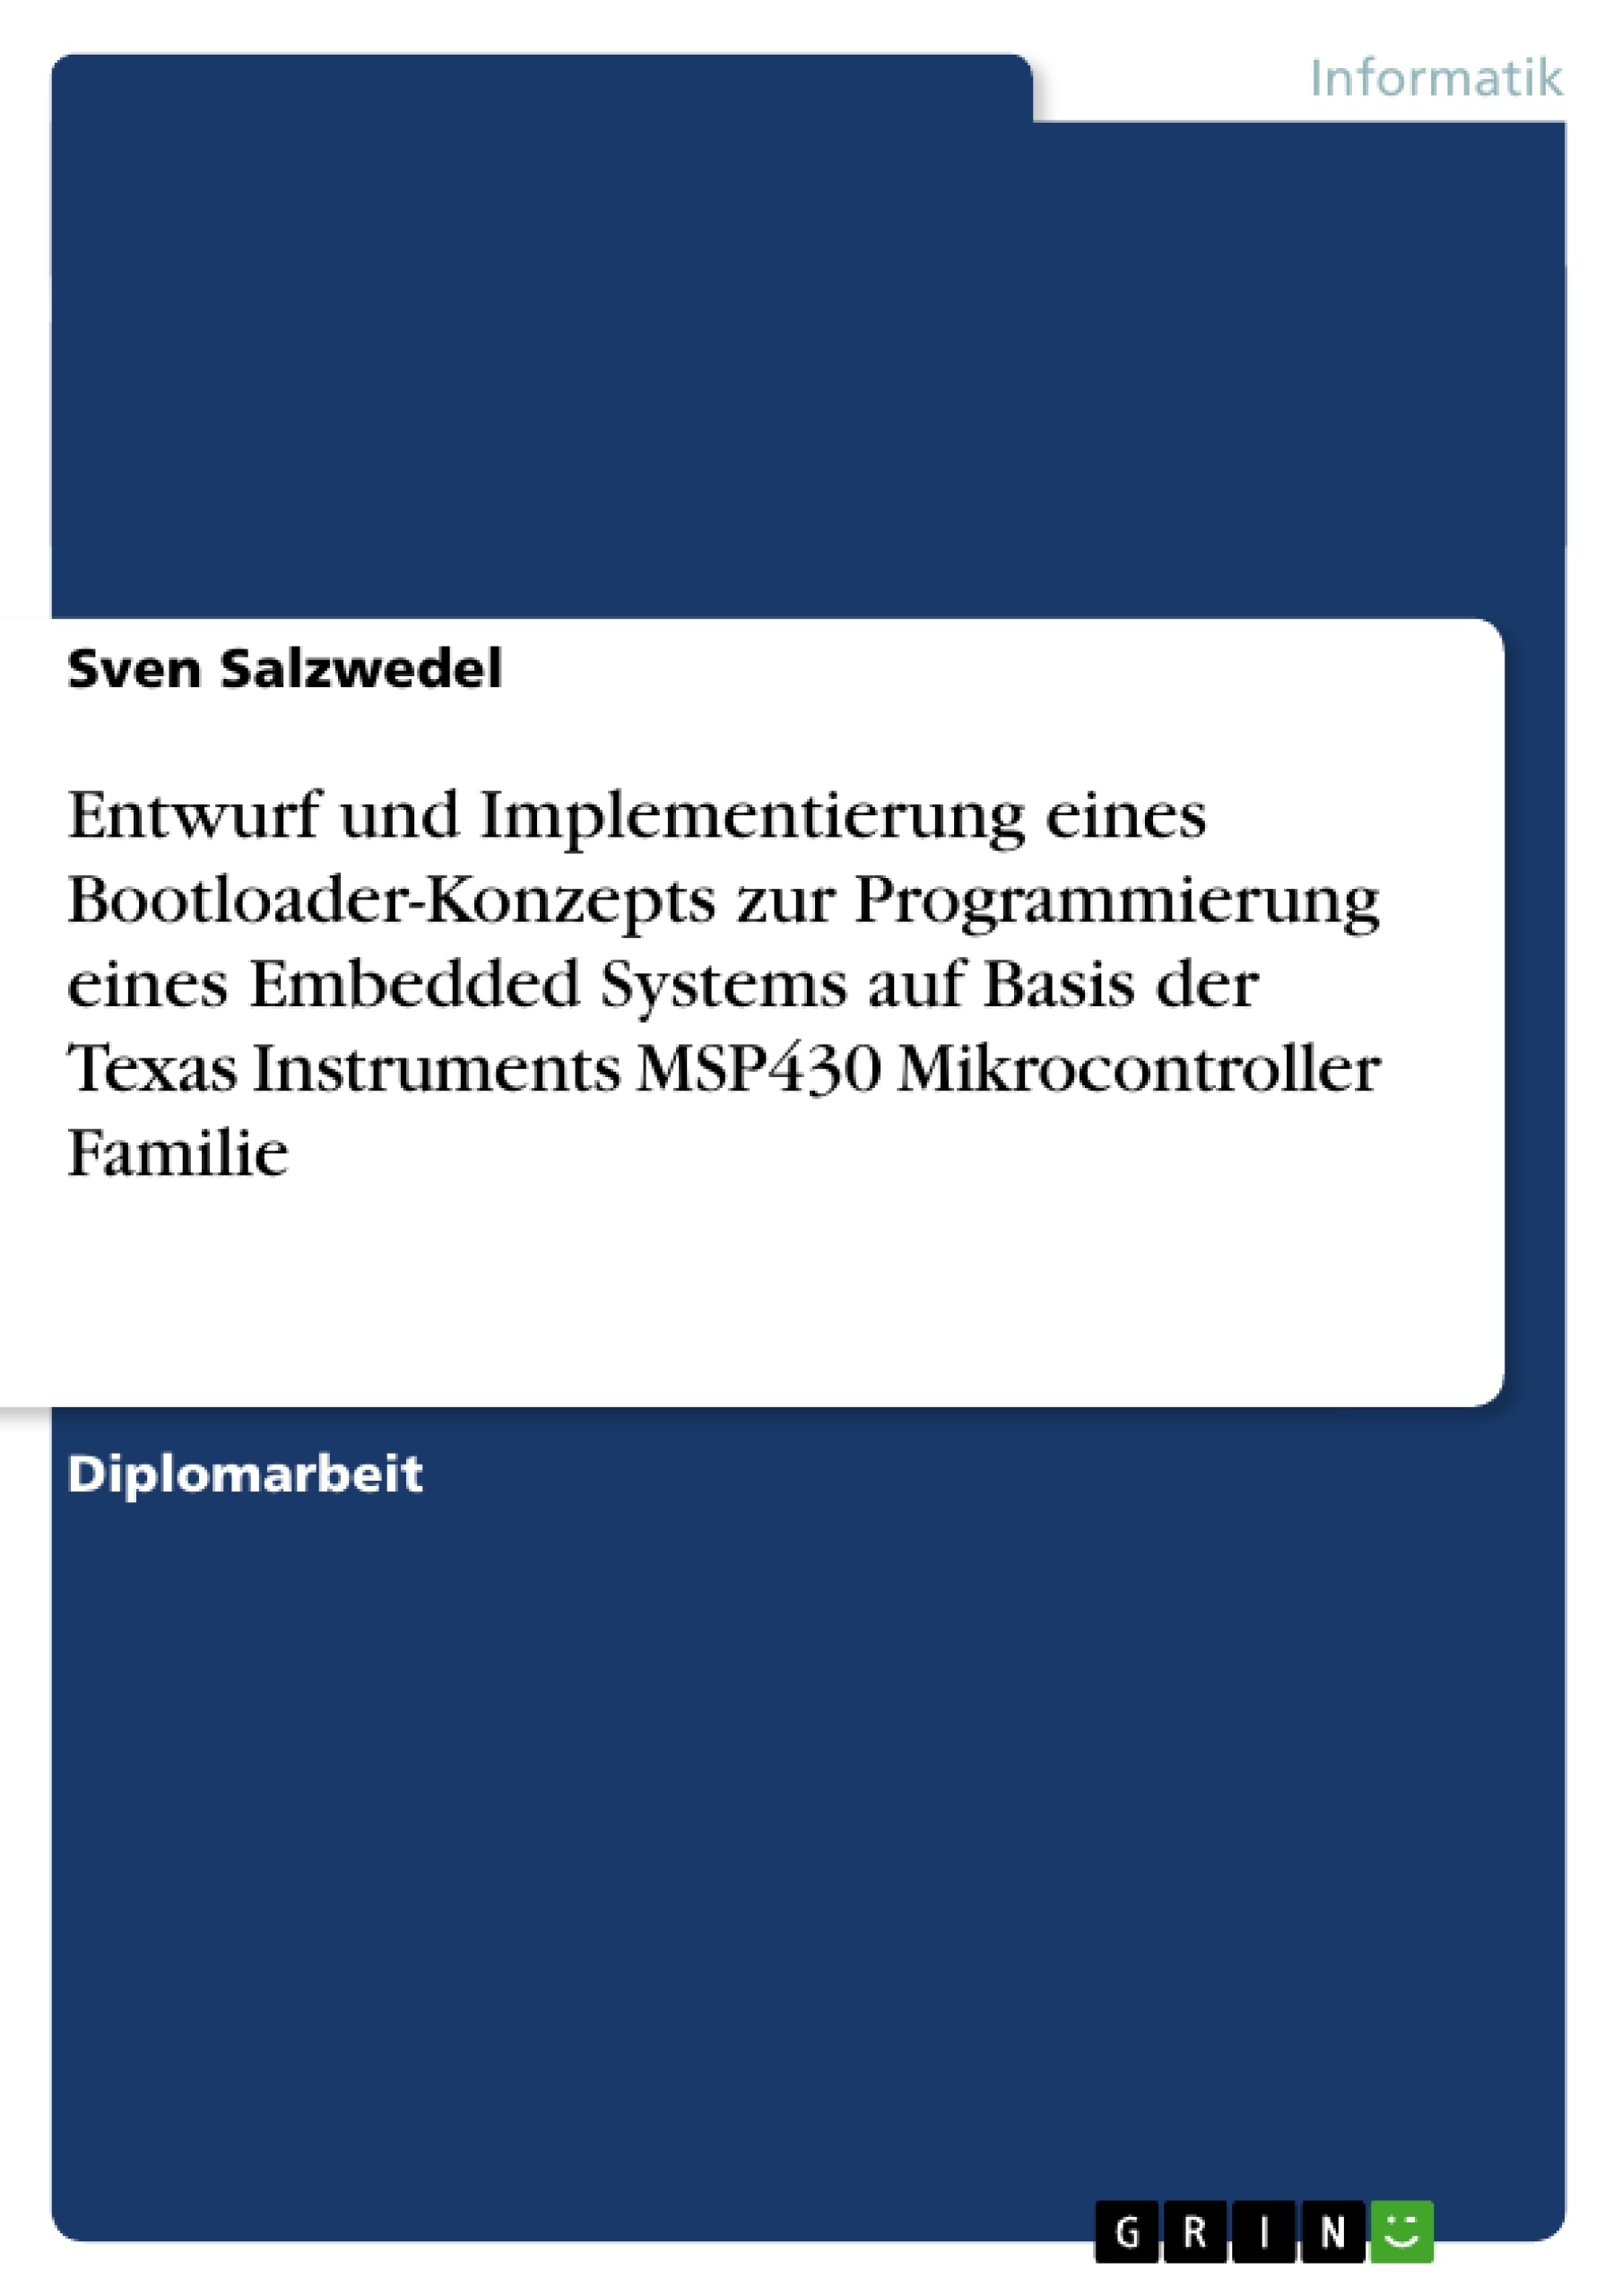 Titre: Entwurf und Implementierung eines Bootloader-Konzepts zur Programmierung eines Embedded Systems auf Basis der Texas Instruments MSP430 Mikrocontroller Familie